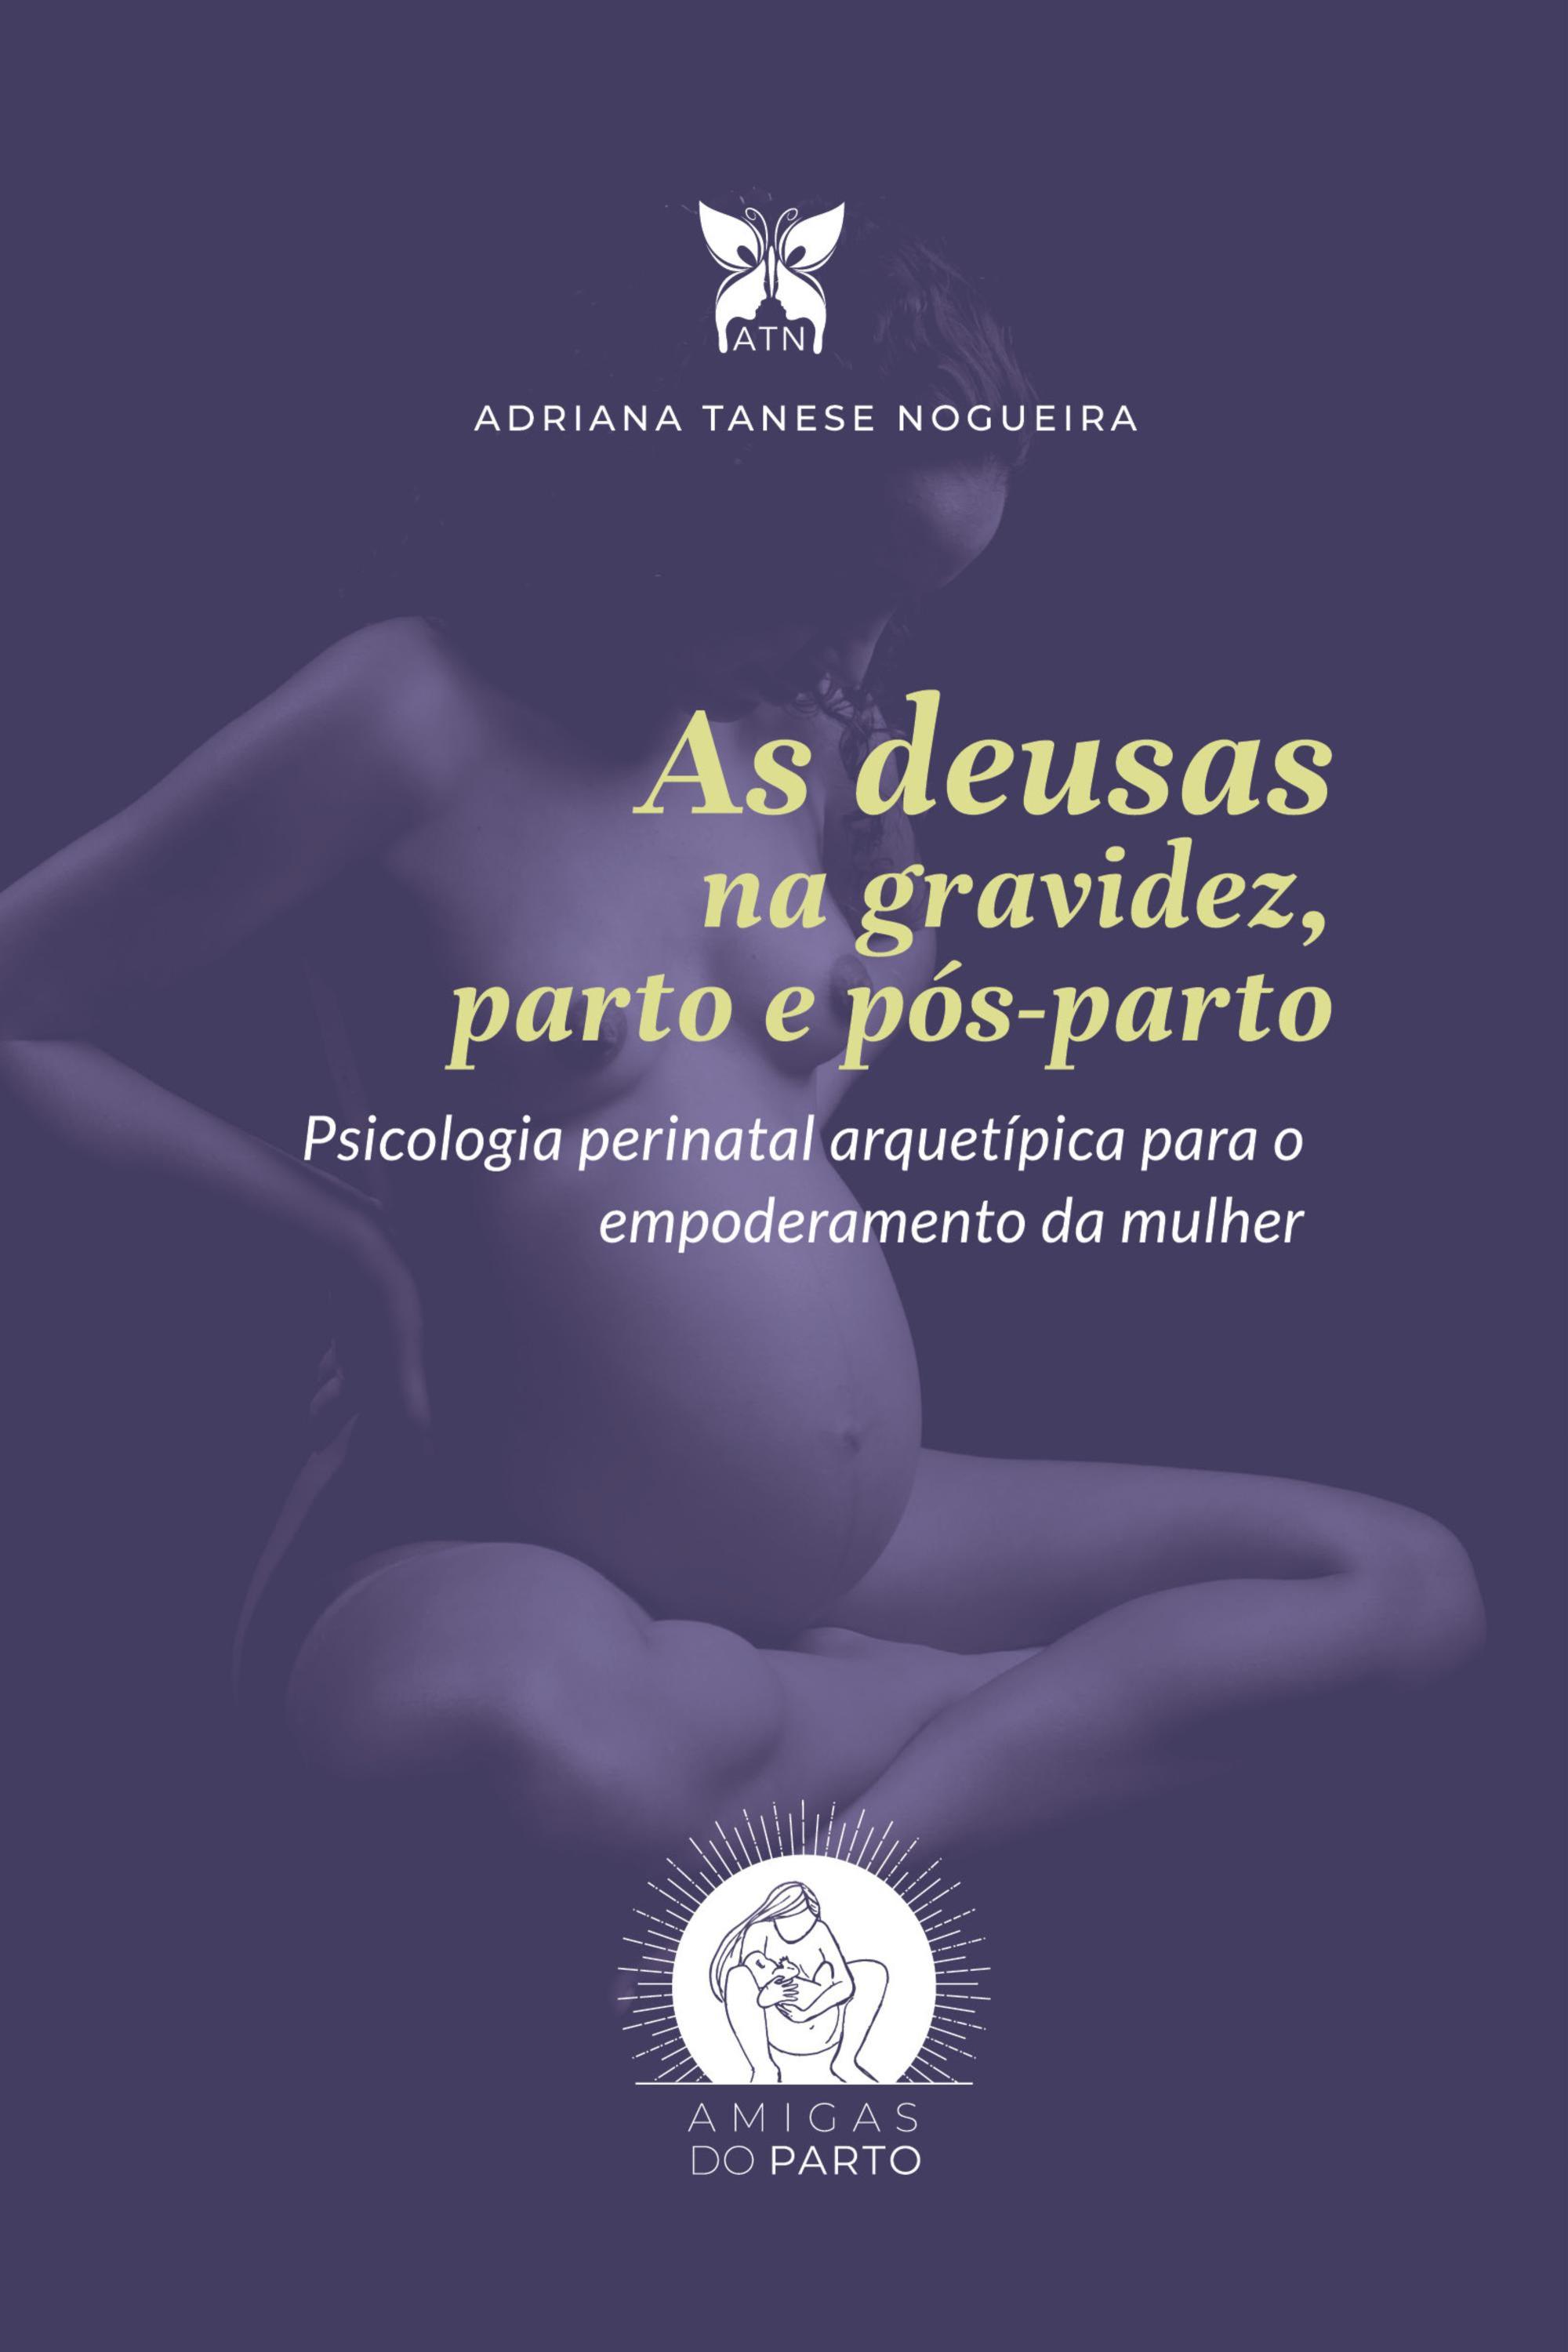 As deusas na gravidez, parto e pós-parto